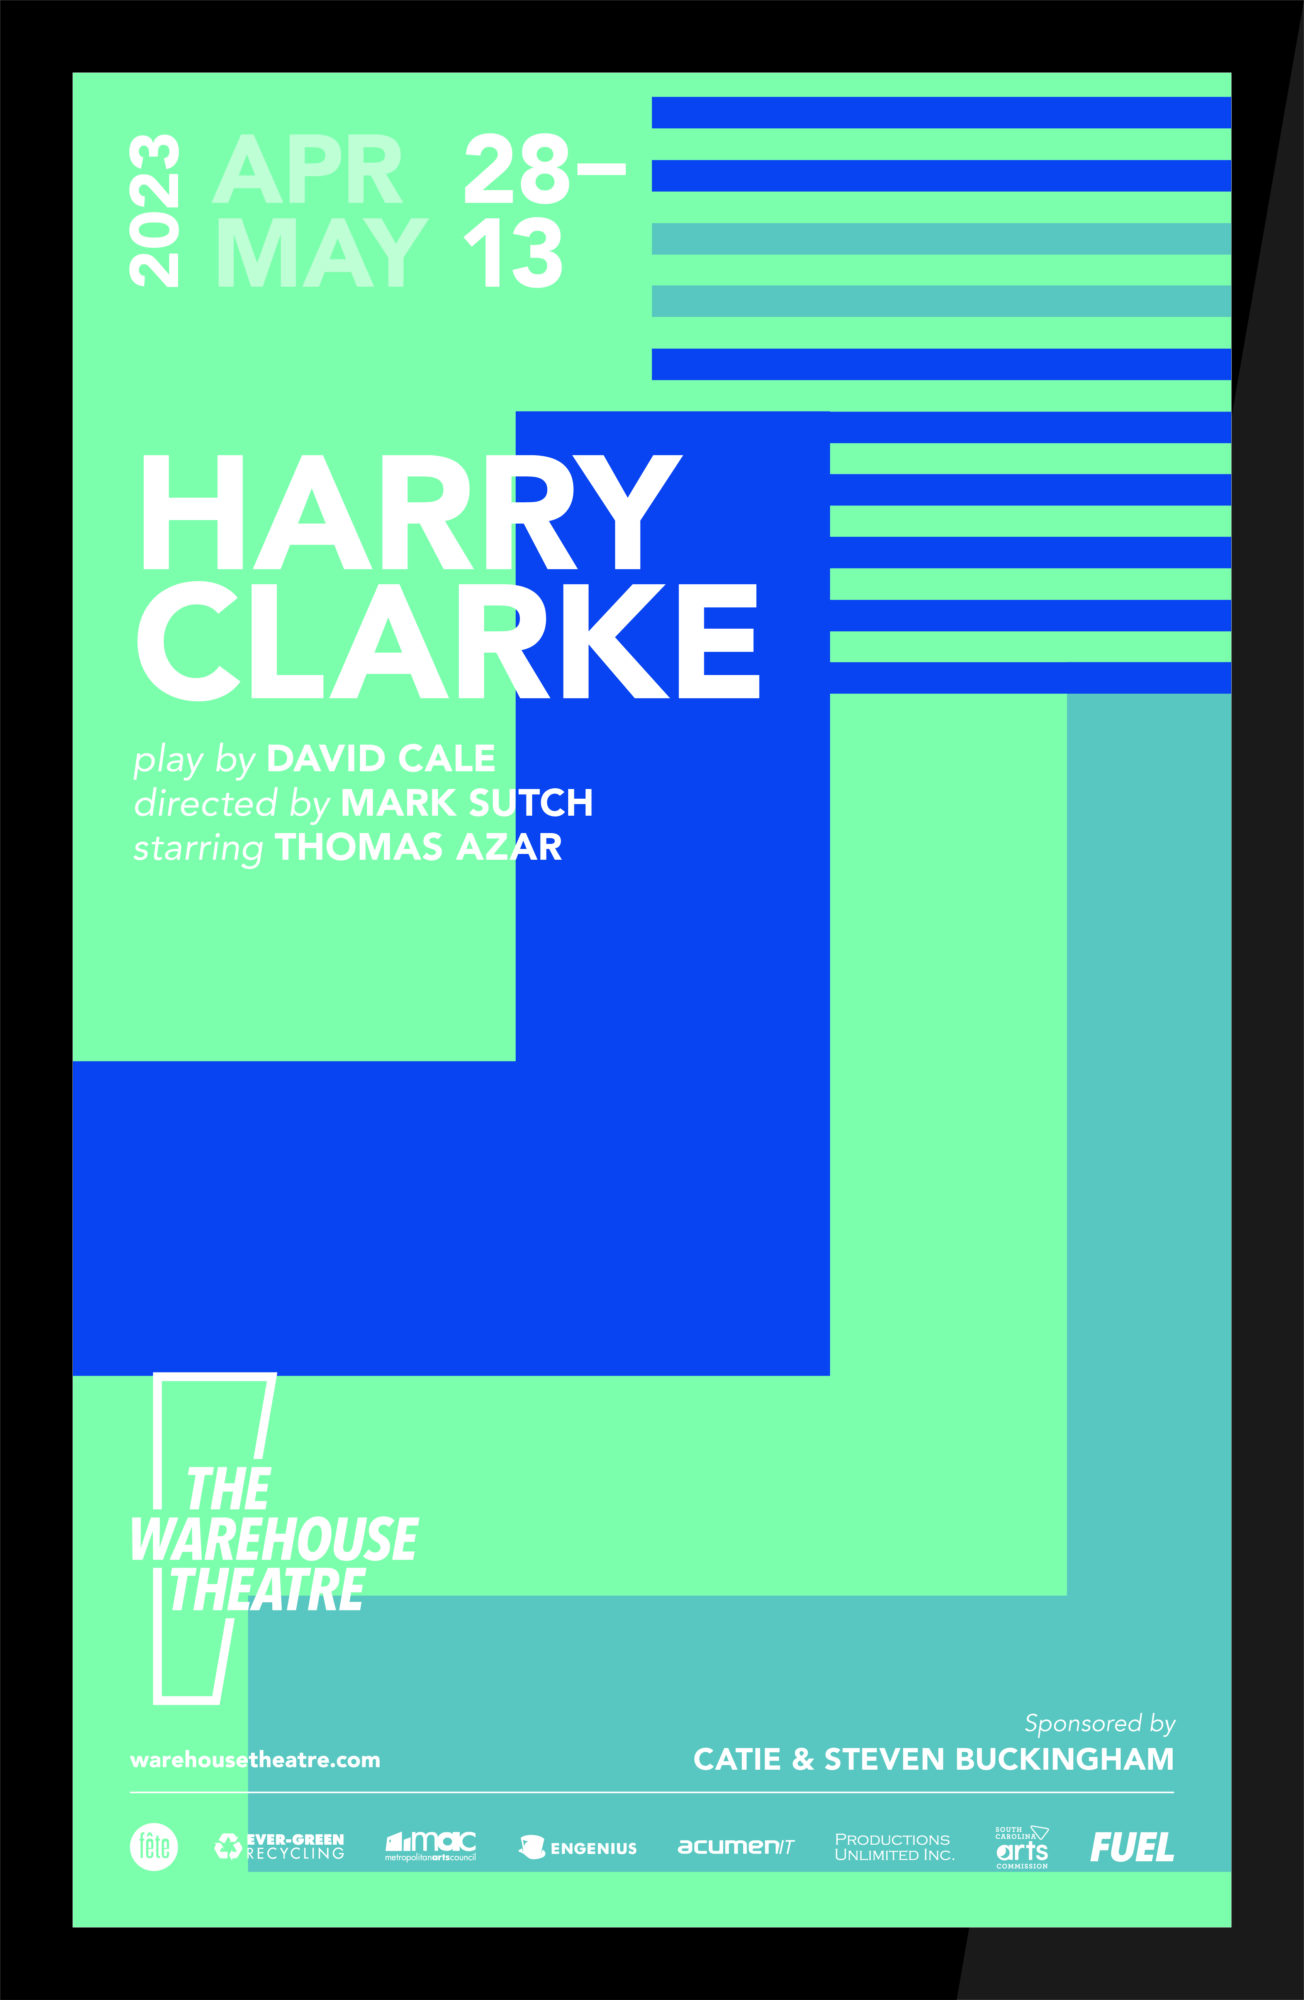 HARRY CLARKE